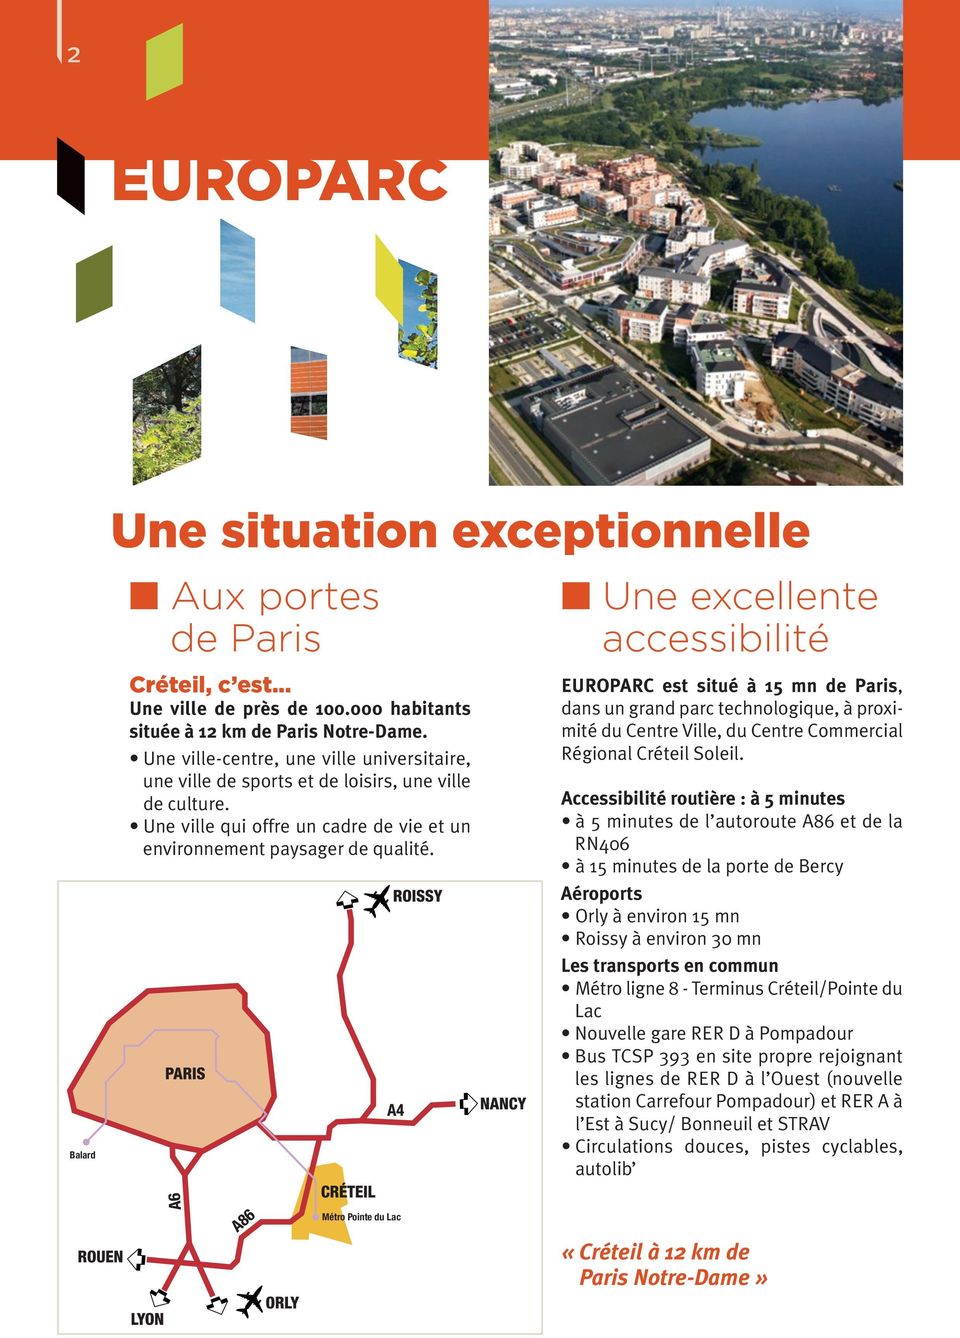 n Une excellente accessibilité EUROPARC est situé à 15 mn de Paris, dans un grand parc technologique, à proximité du Centre Ville, du Centre Commercial Régional Créteil Soleil.